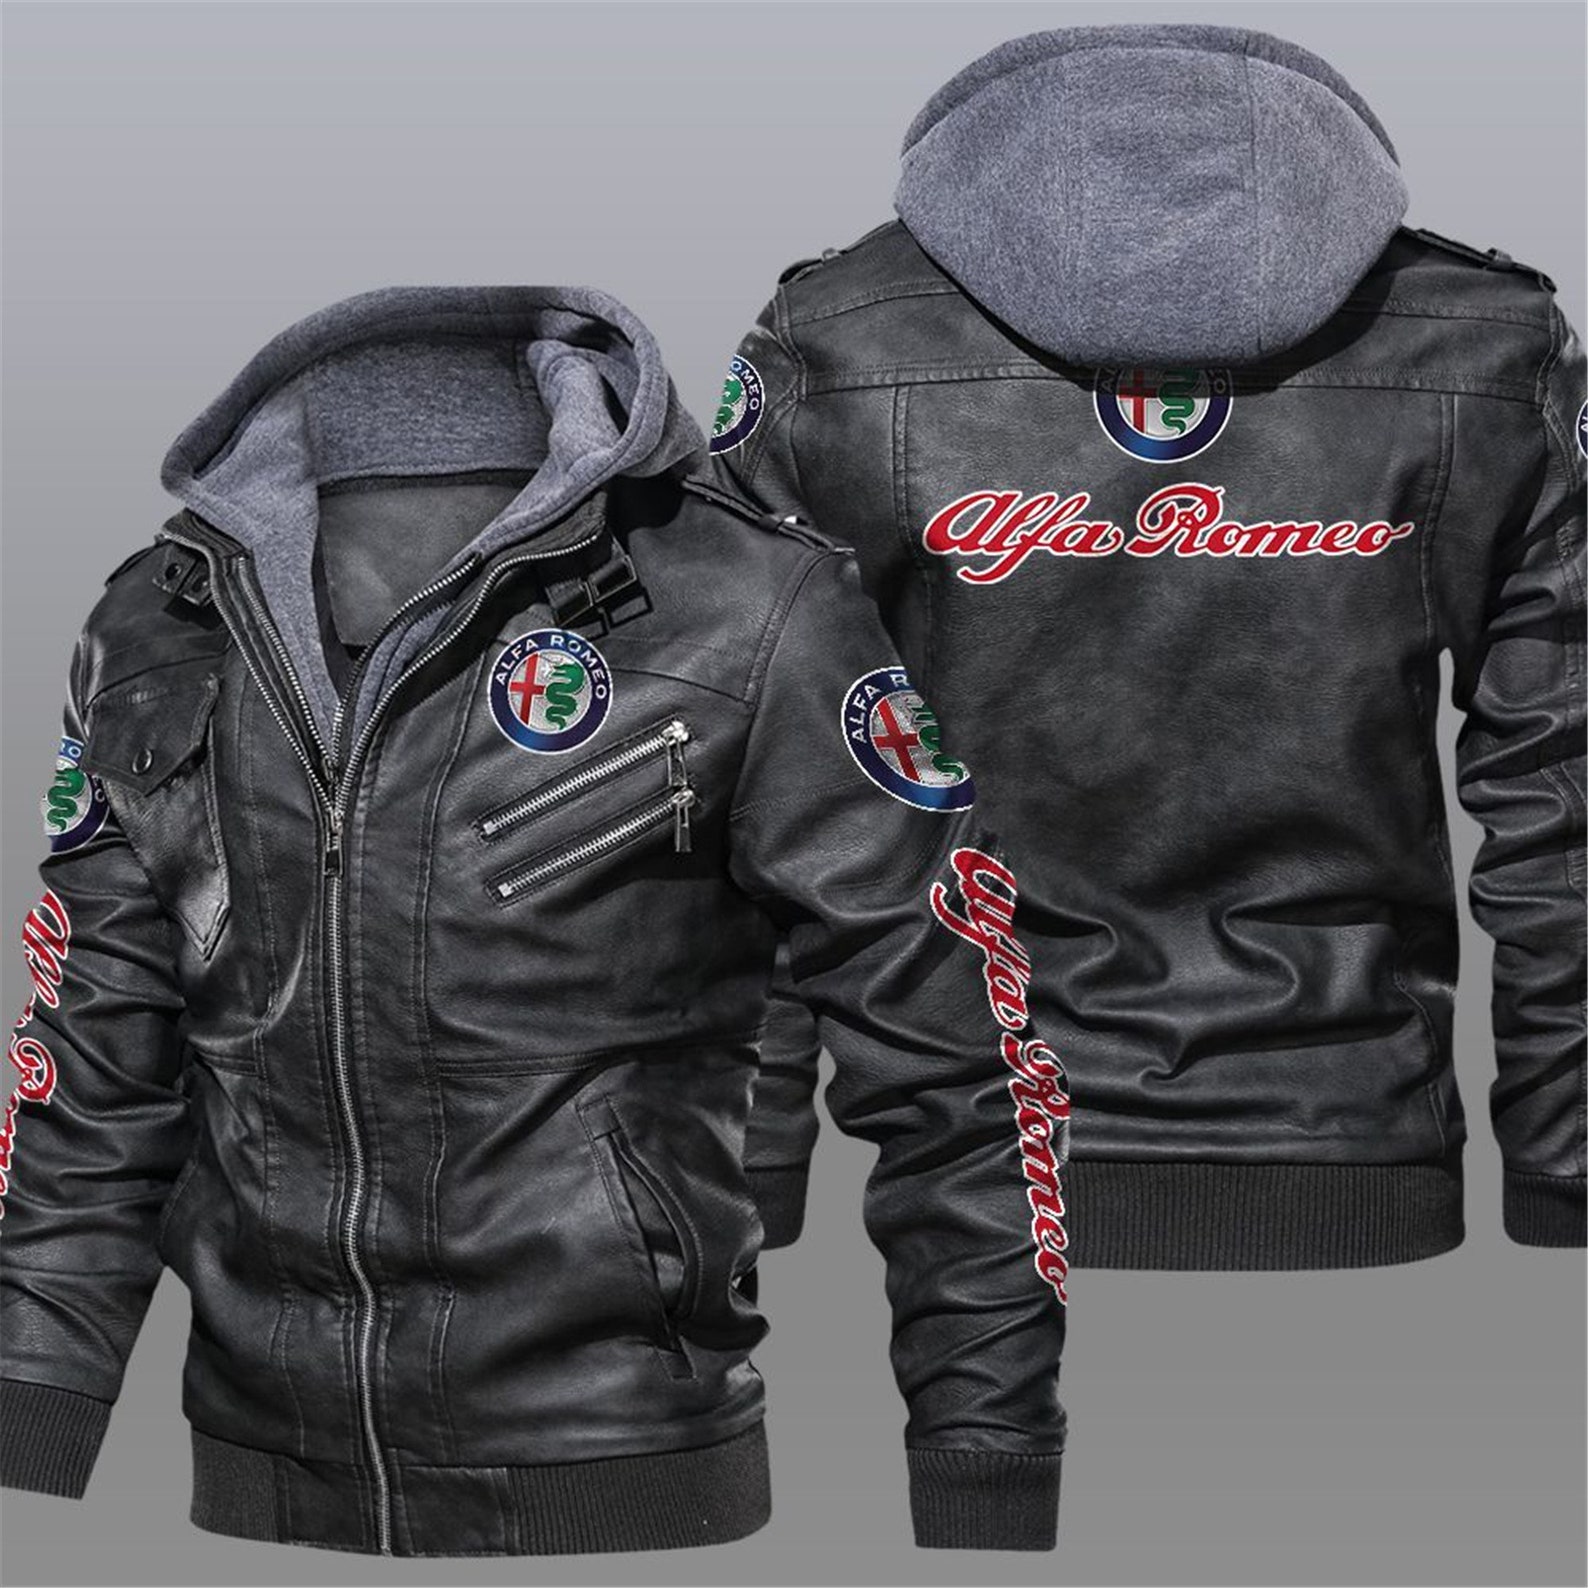 Alfa Romeo Leather Jacket Hoodies SweatshirtAlfa Romeo Team | Etsy